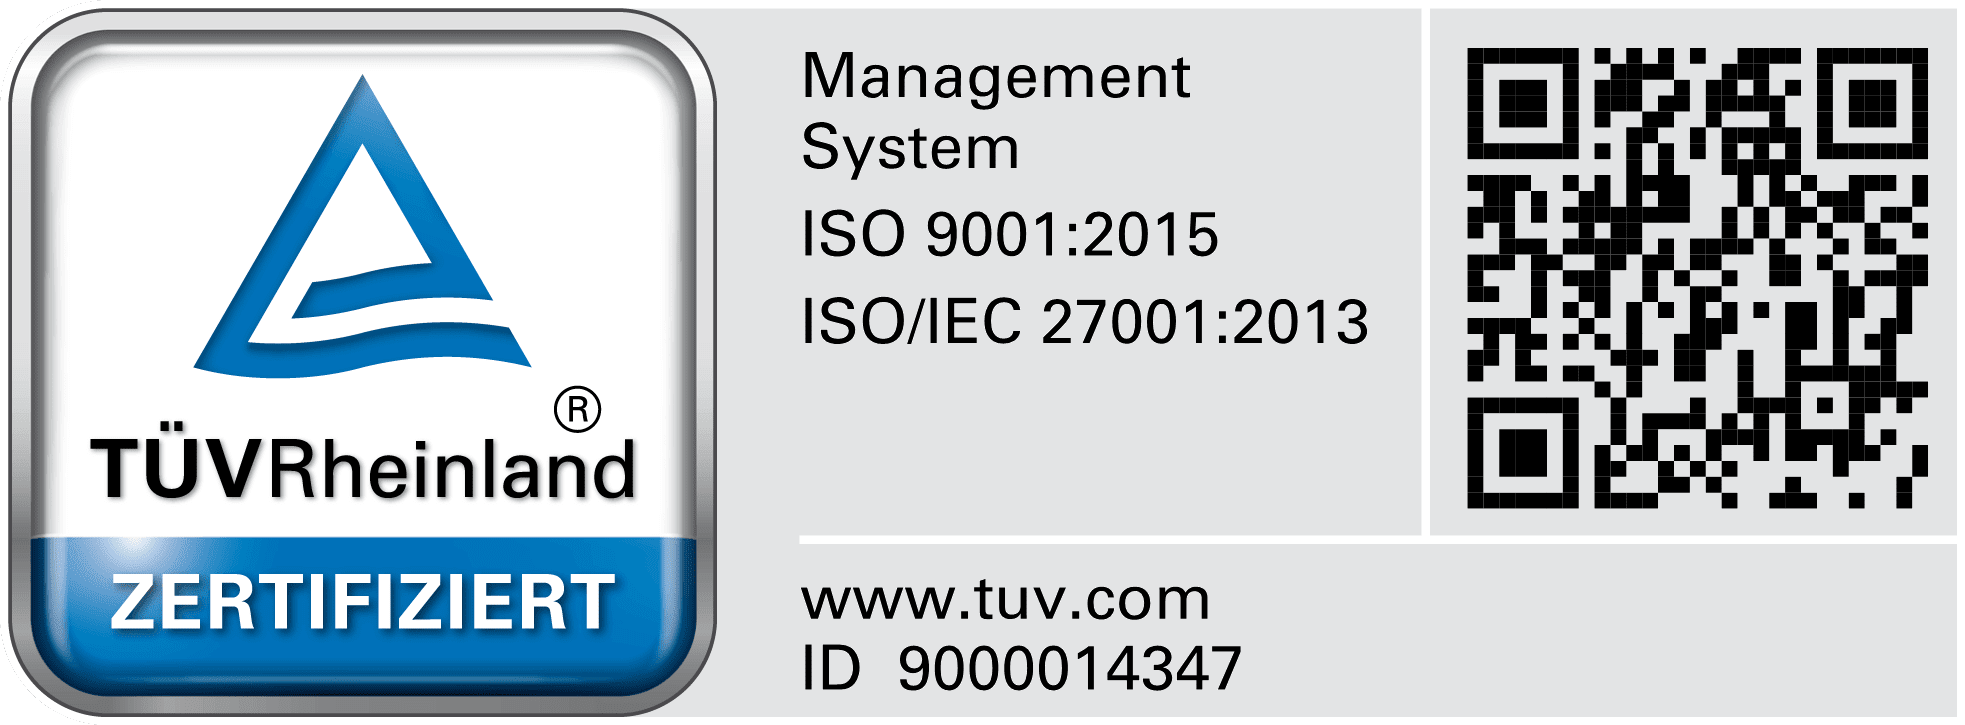 Exasol ISO 9001:2015 Cert with QR Code - DE